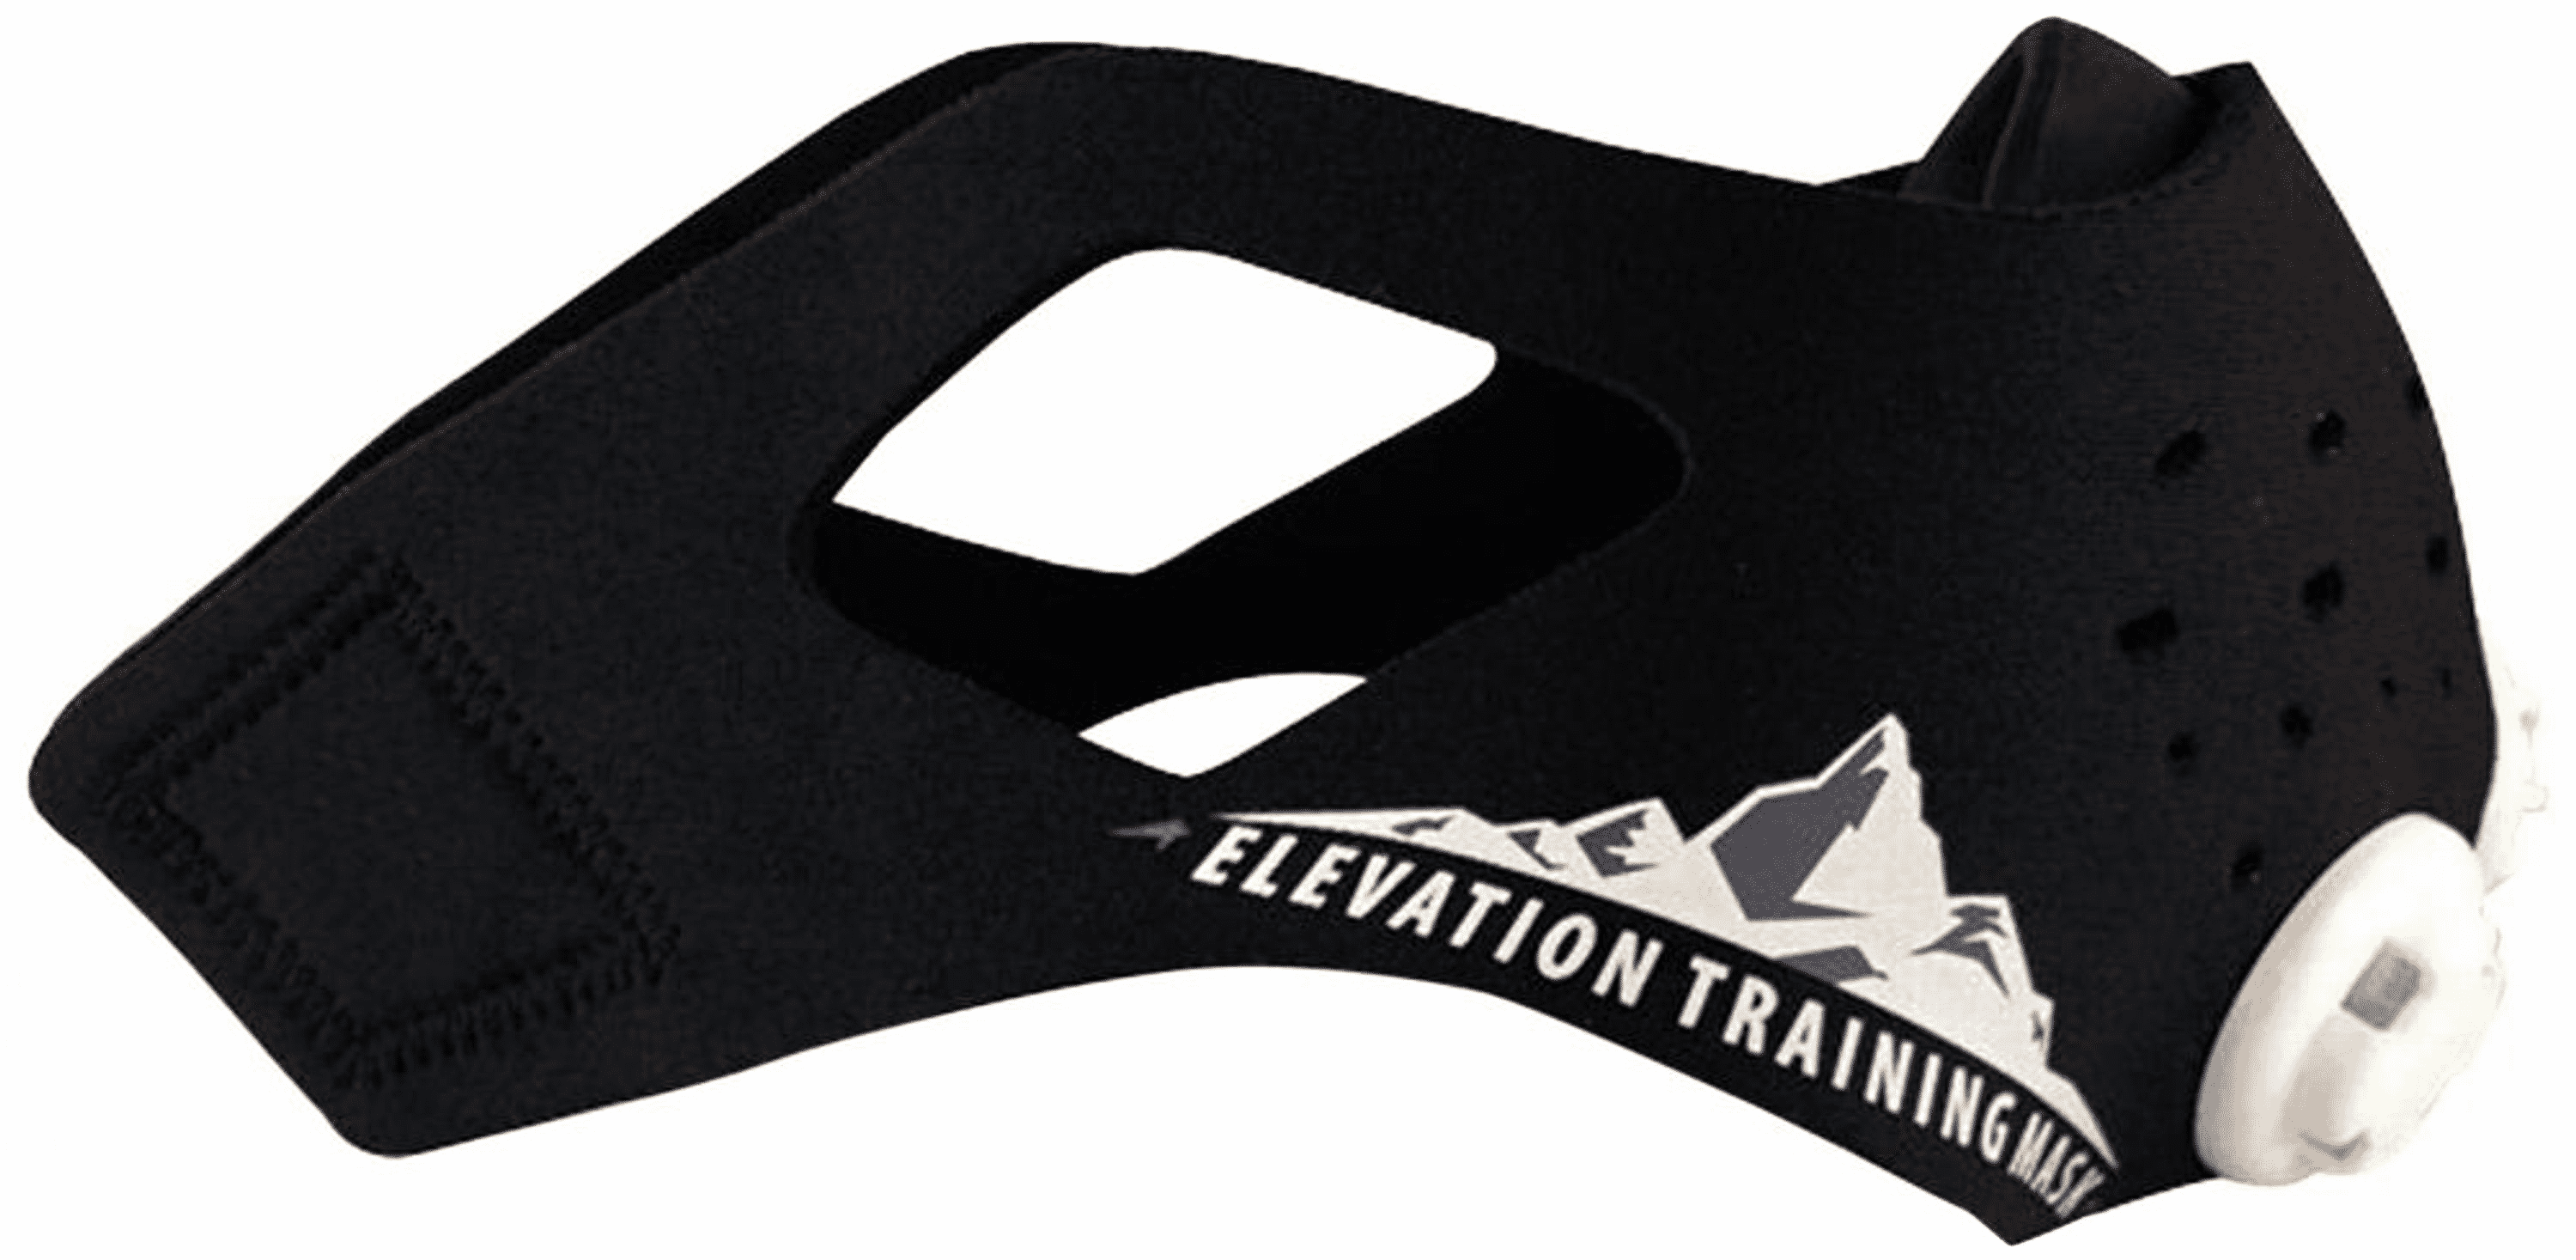 MMA Elevation Trainings Maske | MMA Elevation Trainings Maske 2.0 für Fitness, Höhen, Training, Kampfsport, Jogging Waschbar, erhöht die Lungenkapazität Mit der Elevation Trainingsmaske kommen Sie voll auf Ihre Kosten. Stärken Sie Ihr Lungenvolumen und machen Sie sich fit.